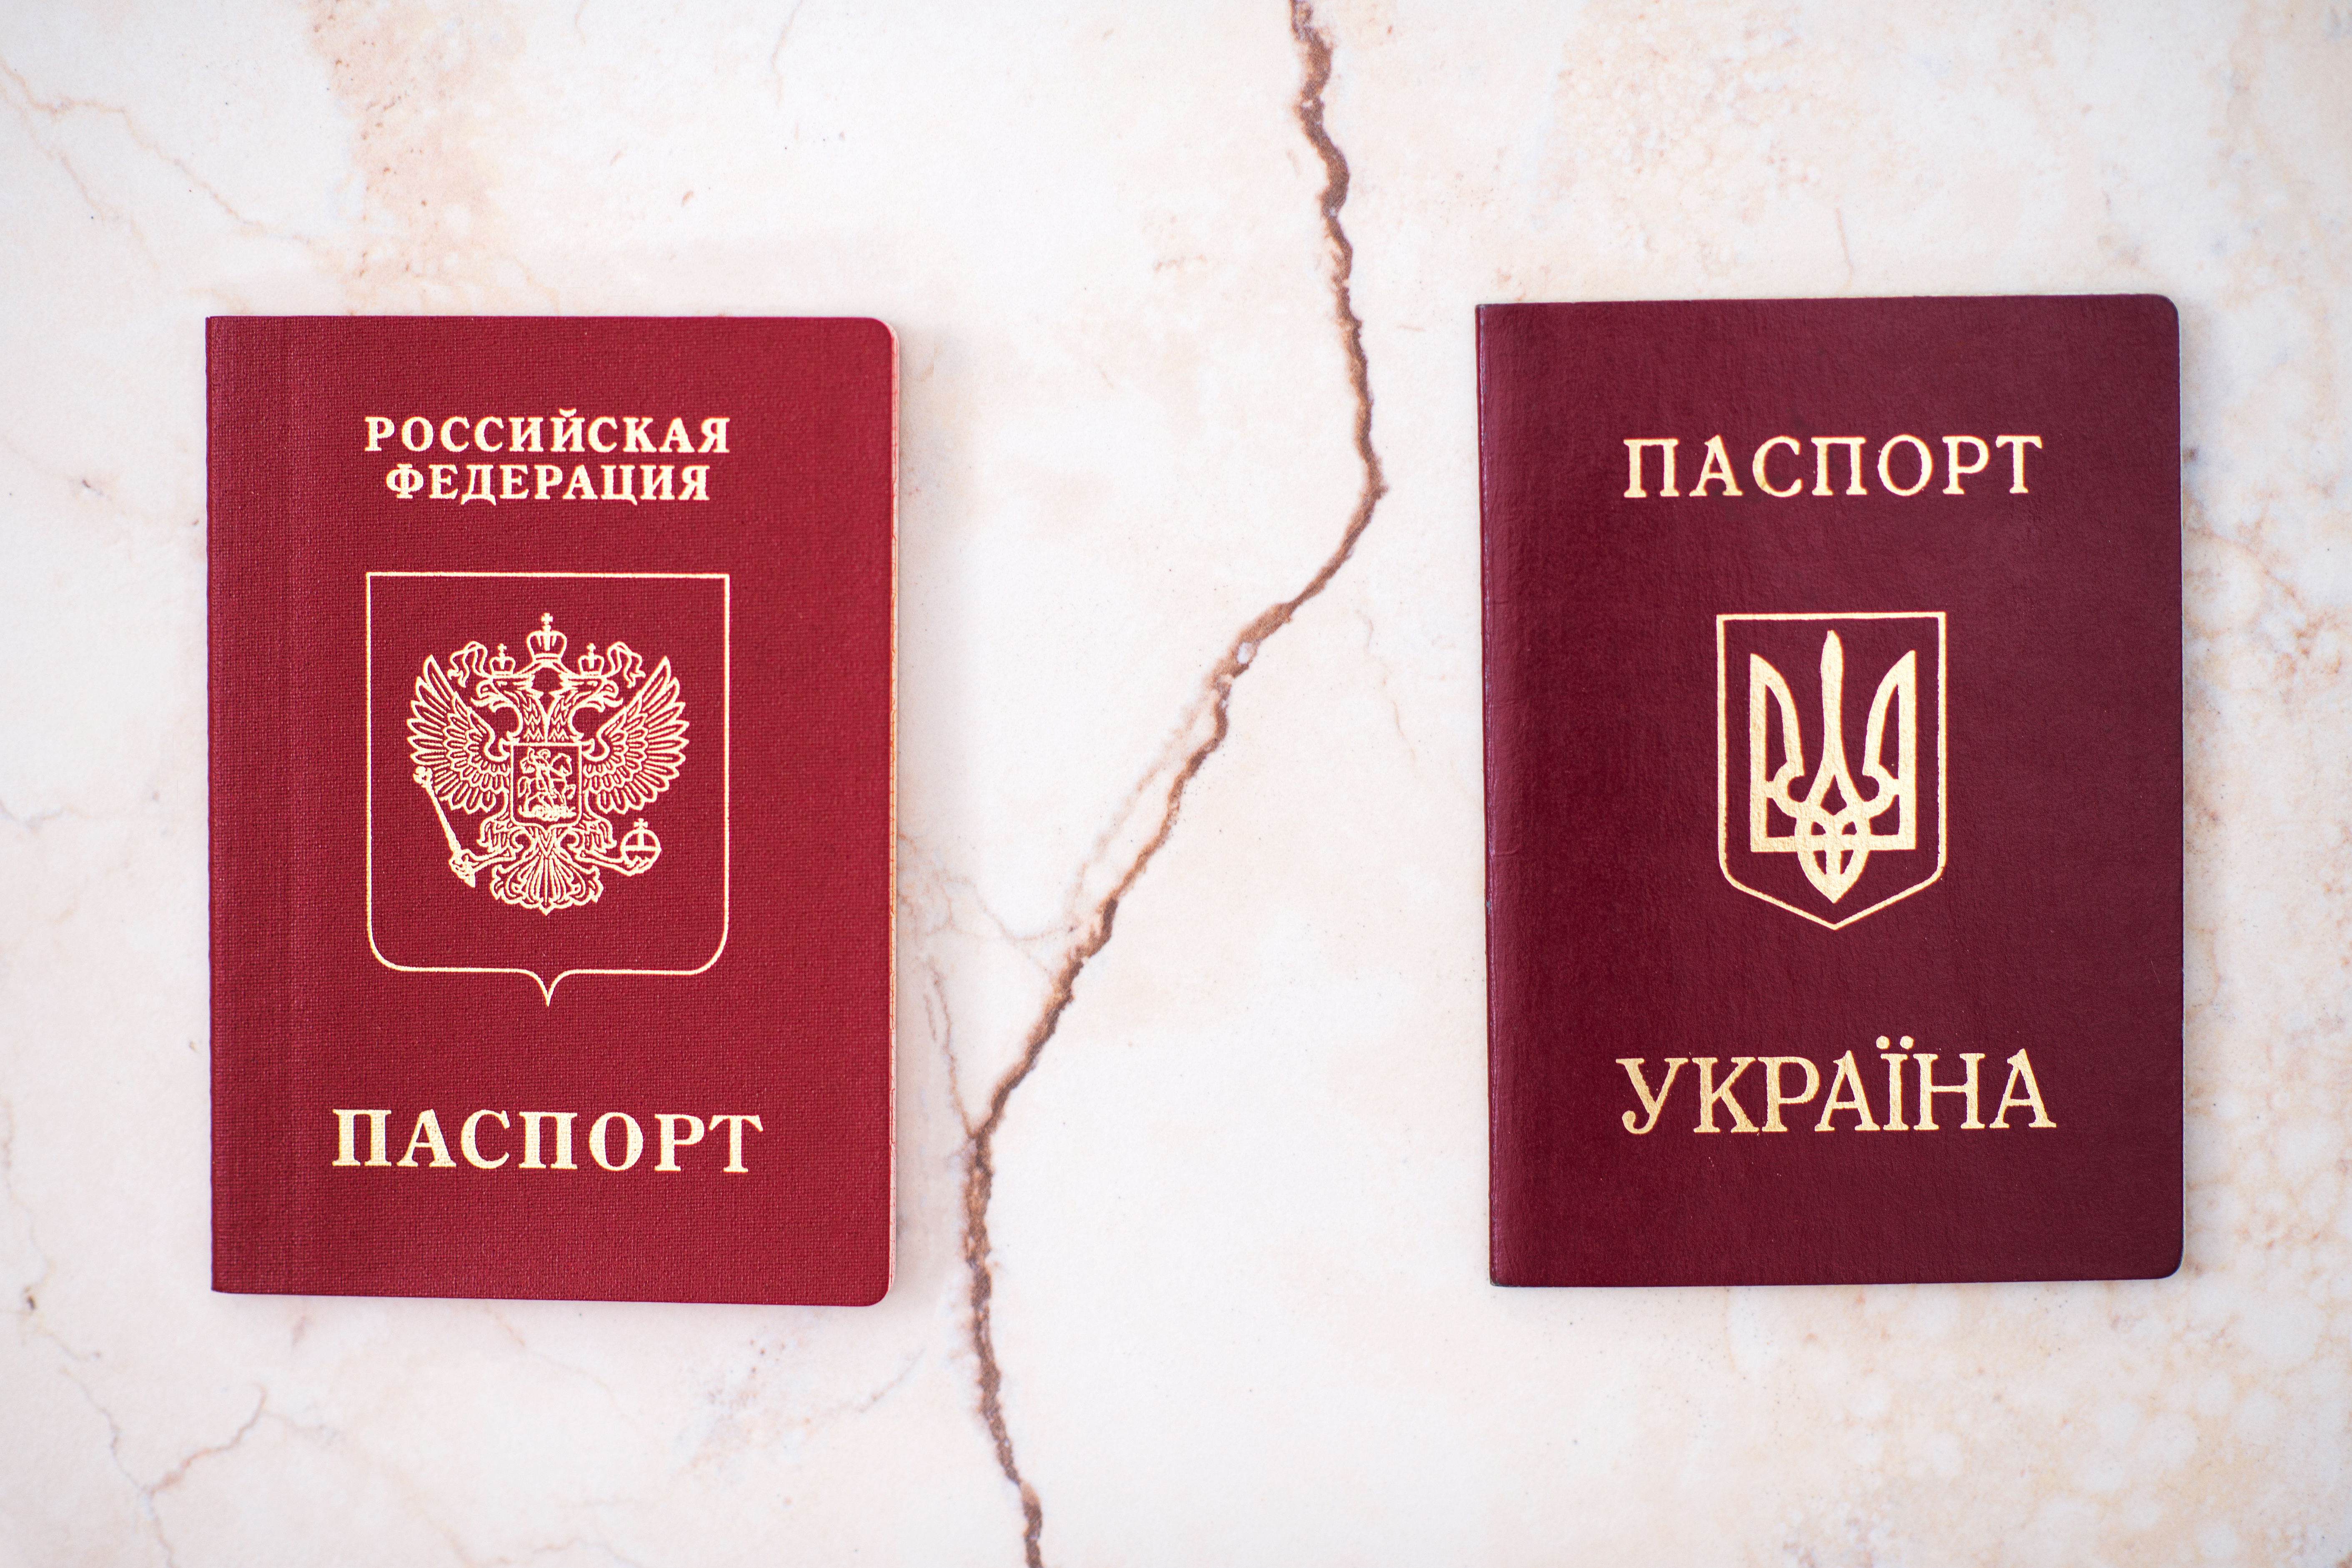 Пересечение границы с 2 паспортами: РФ и Украины